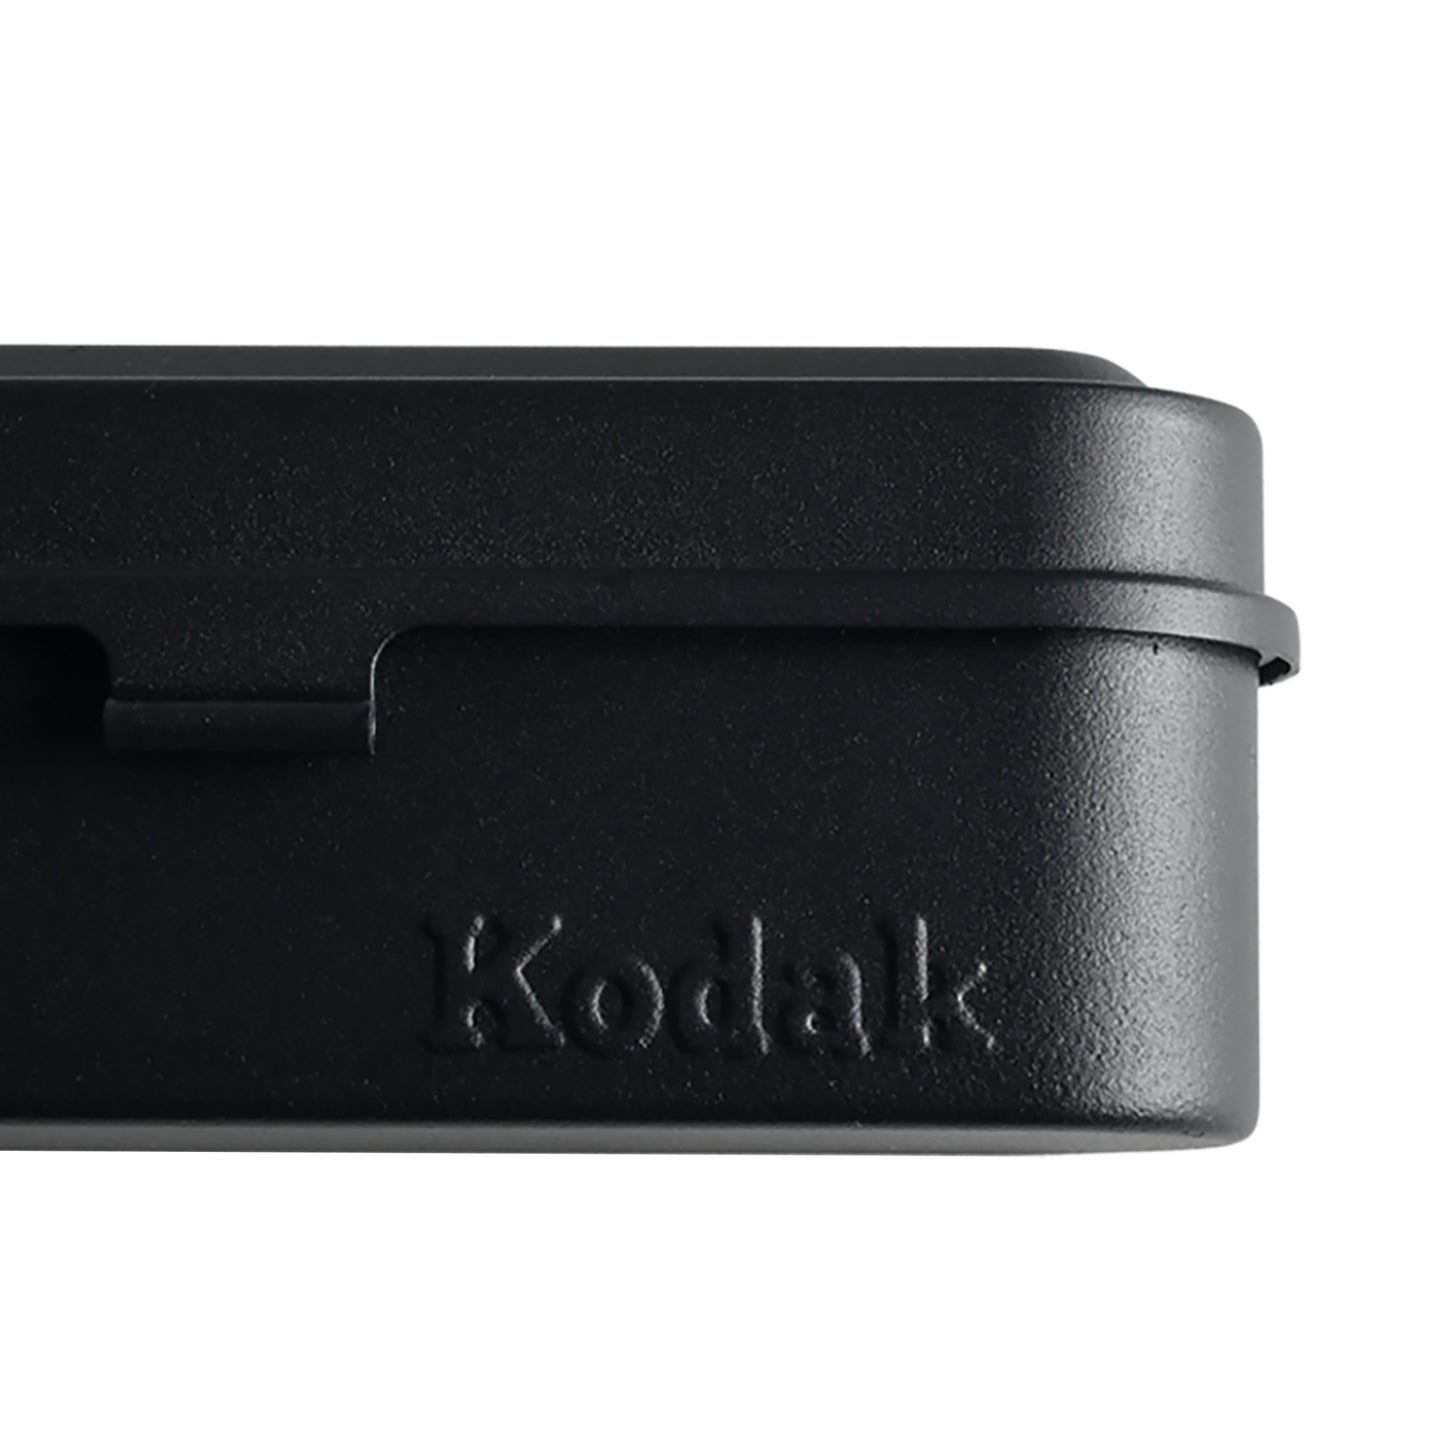 Kodak フィルムケース 135 ブラック